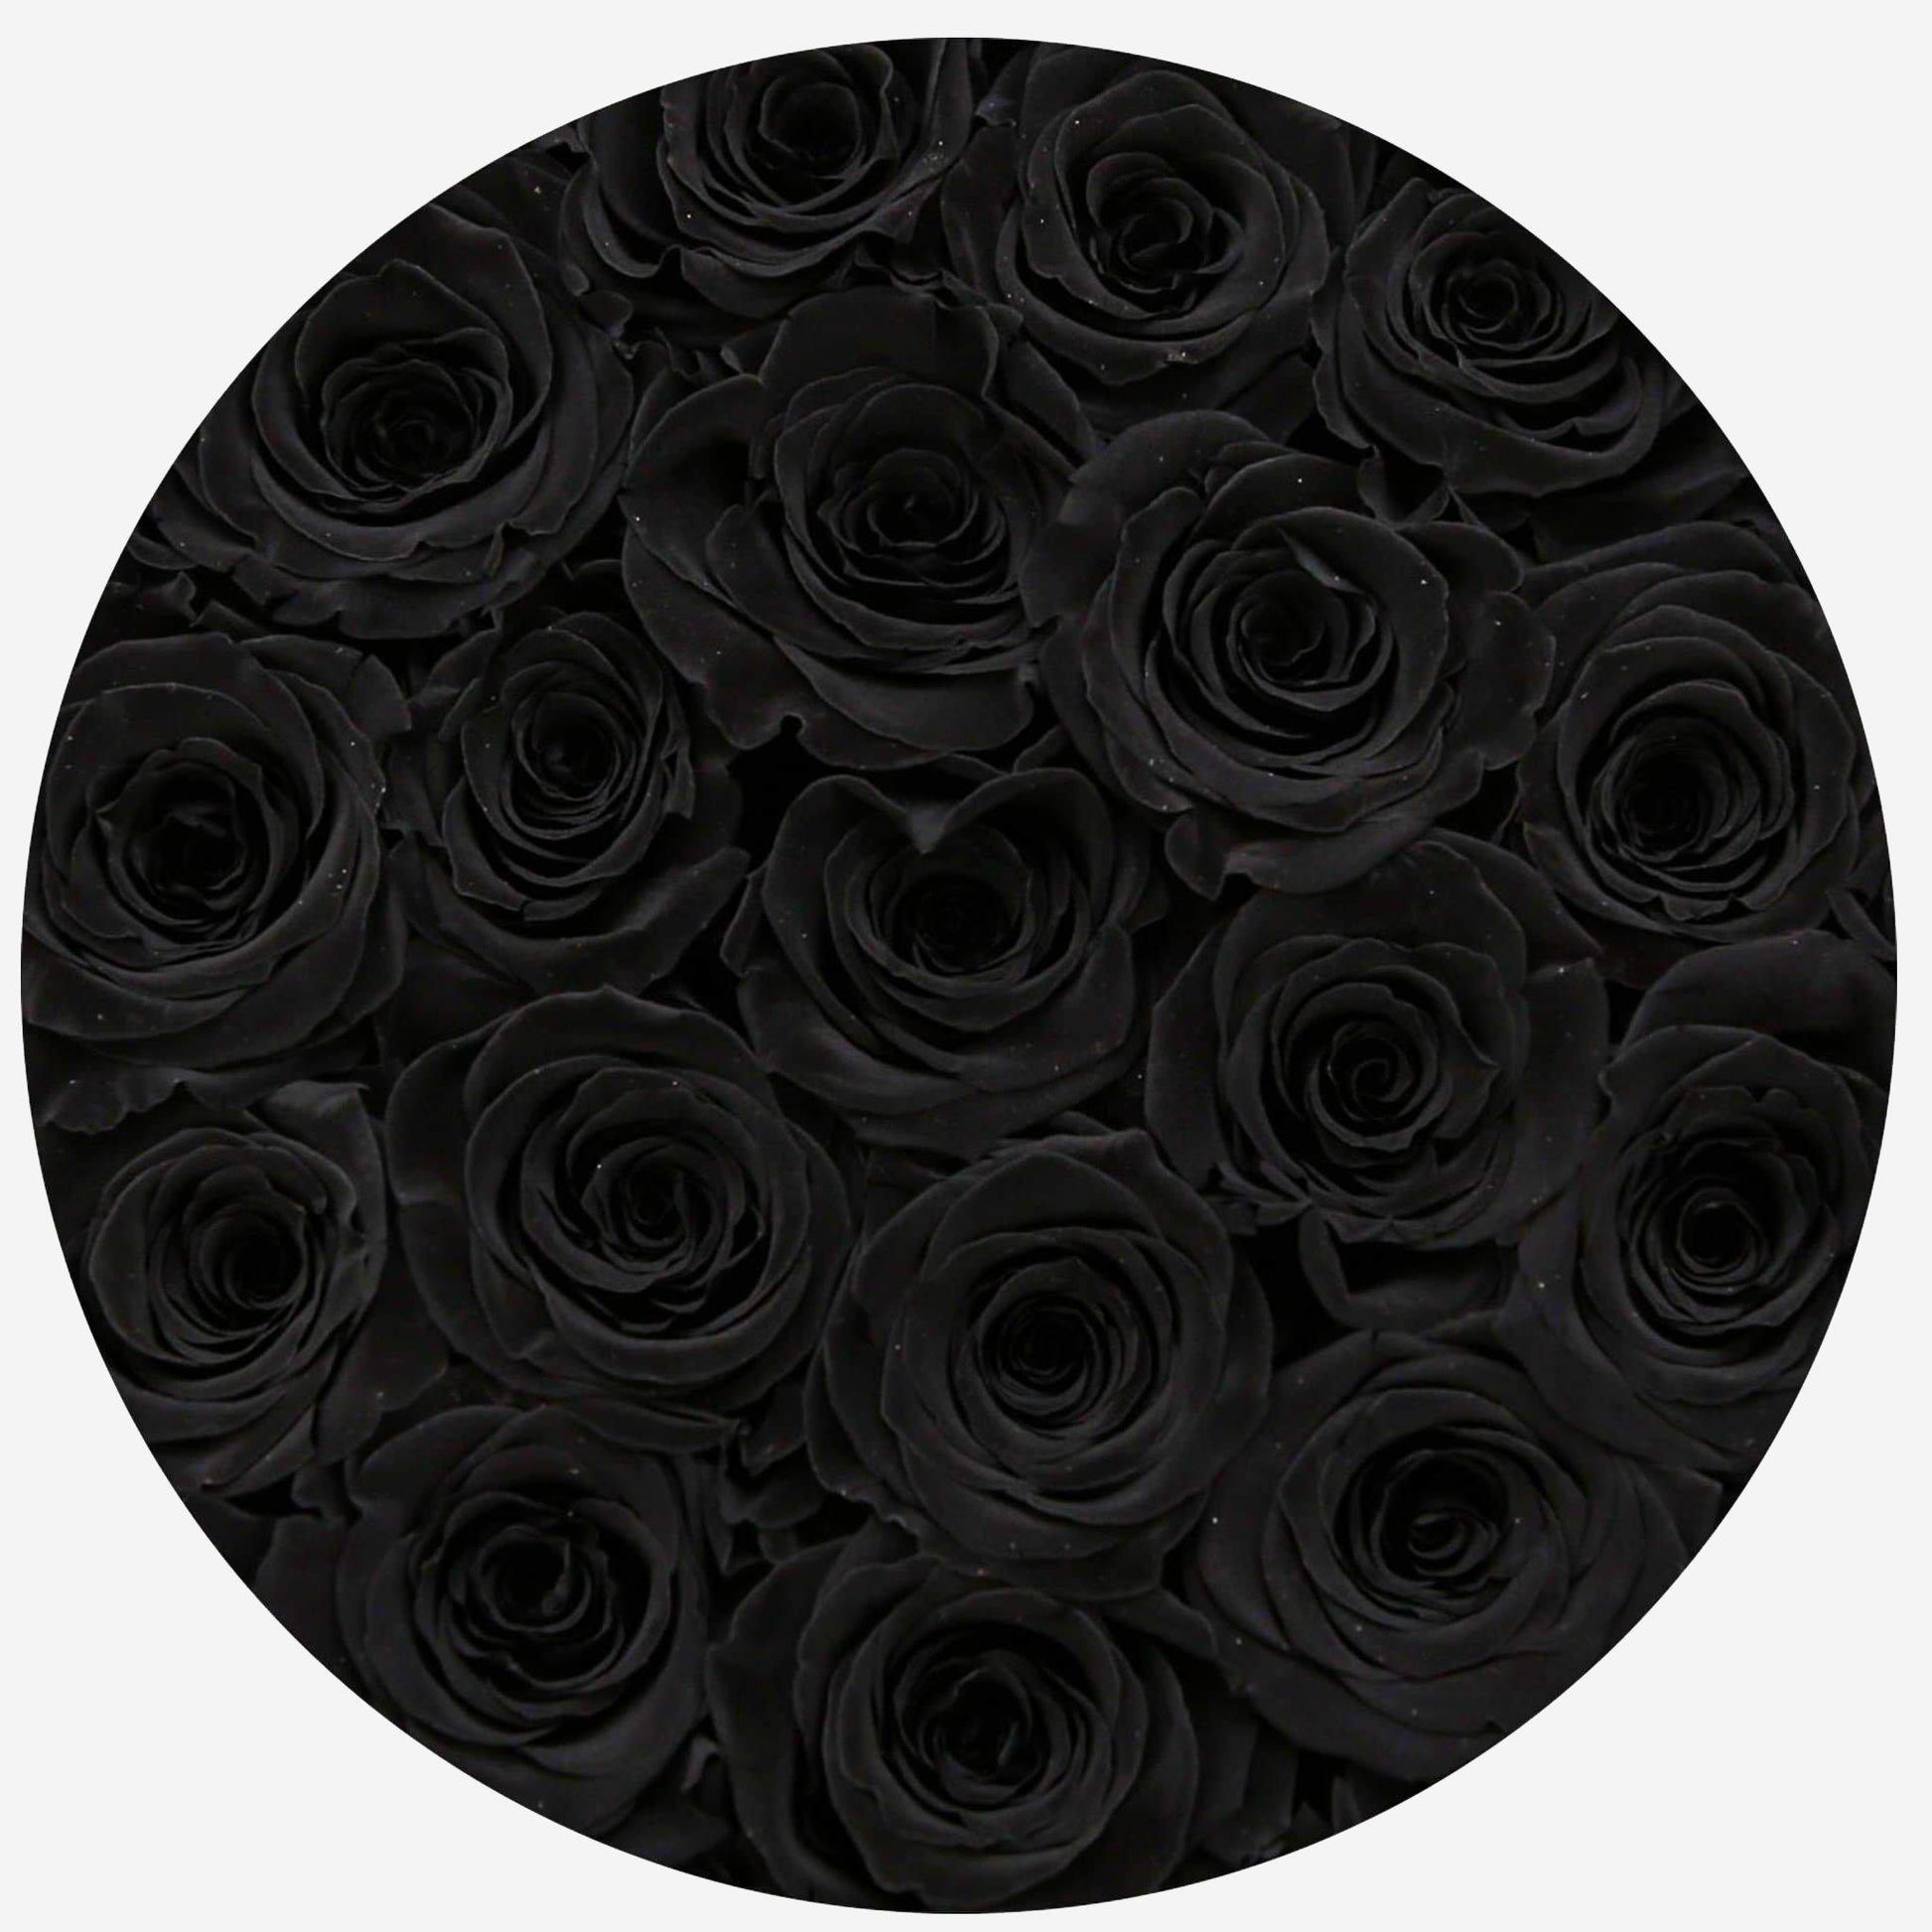 Classic White Box | Black Roses - The Million Roses